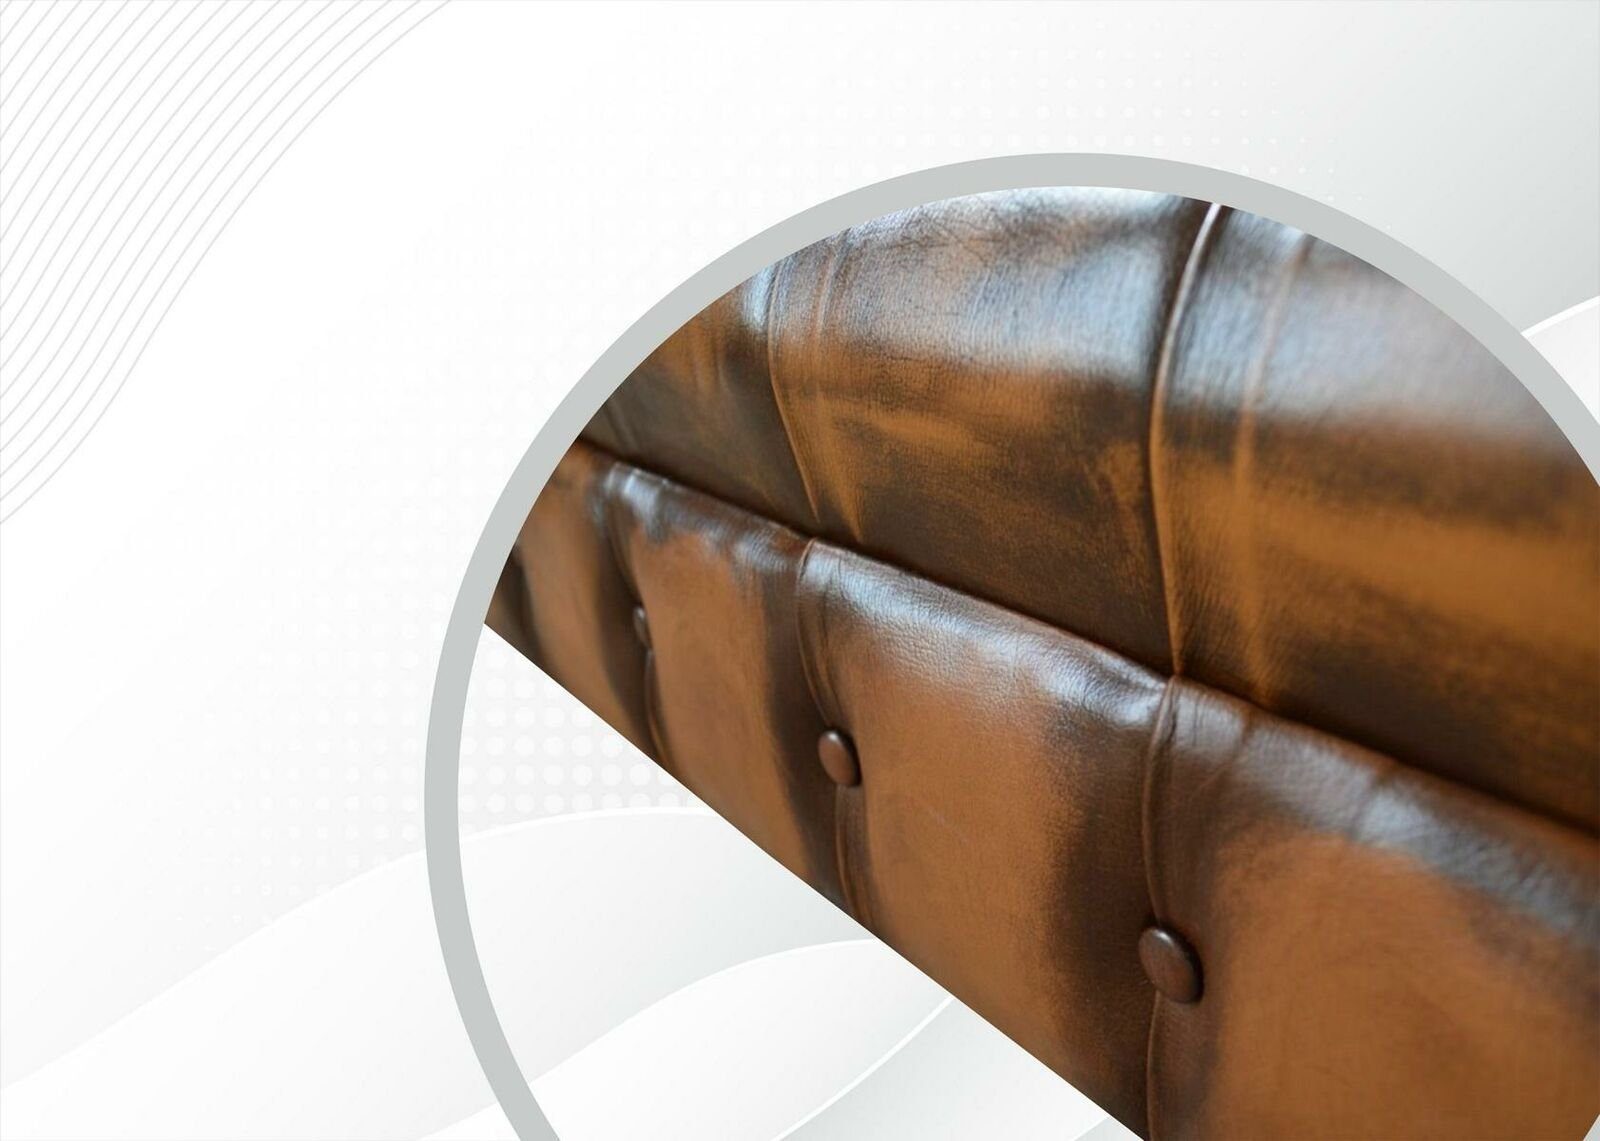 JVmoebel Sofa, Chesterfield Sofa Sitzer Polster Wohnzimmer Design 3 Sofas Couch